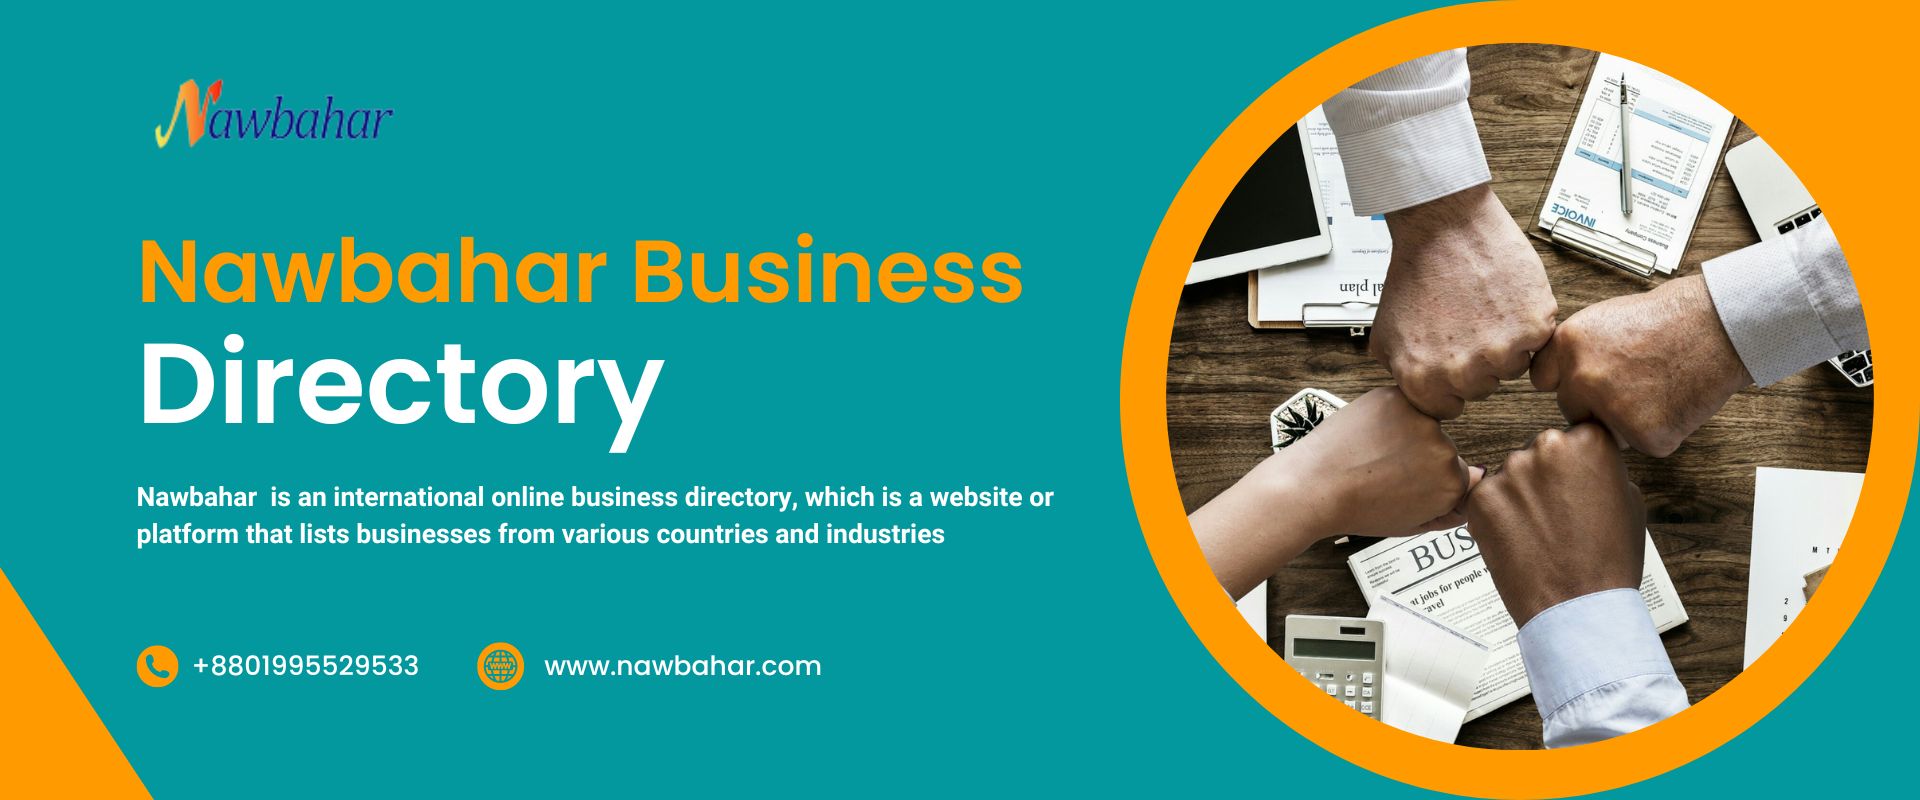 nawbahar.com Business Directory